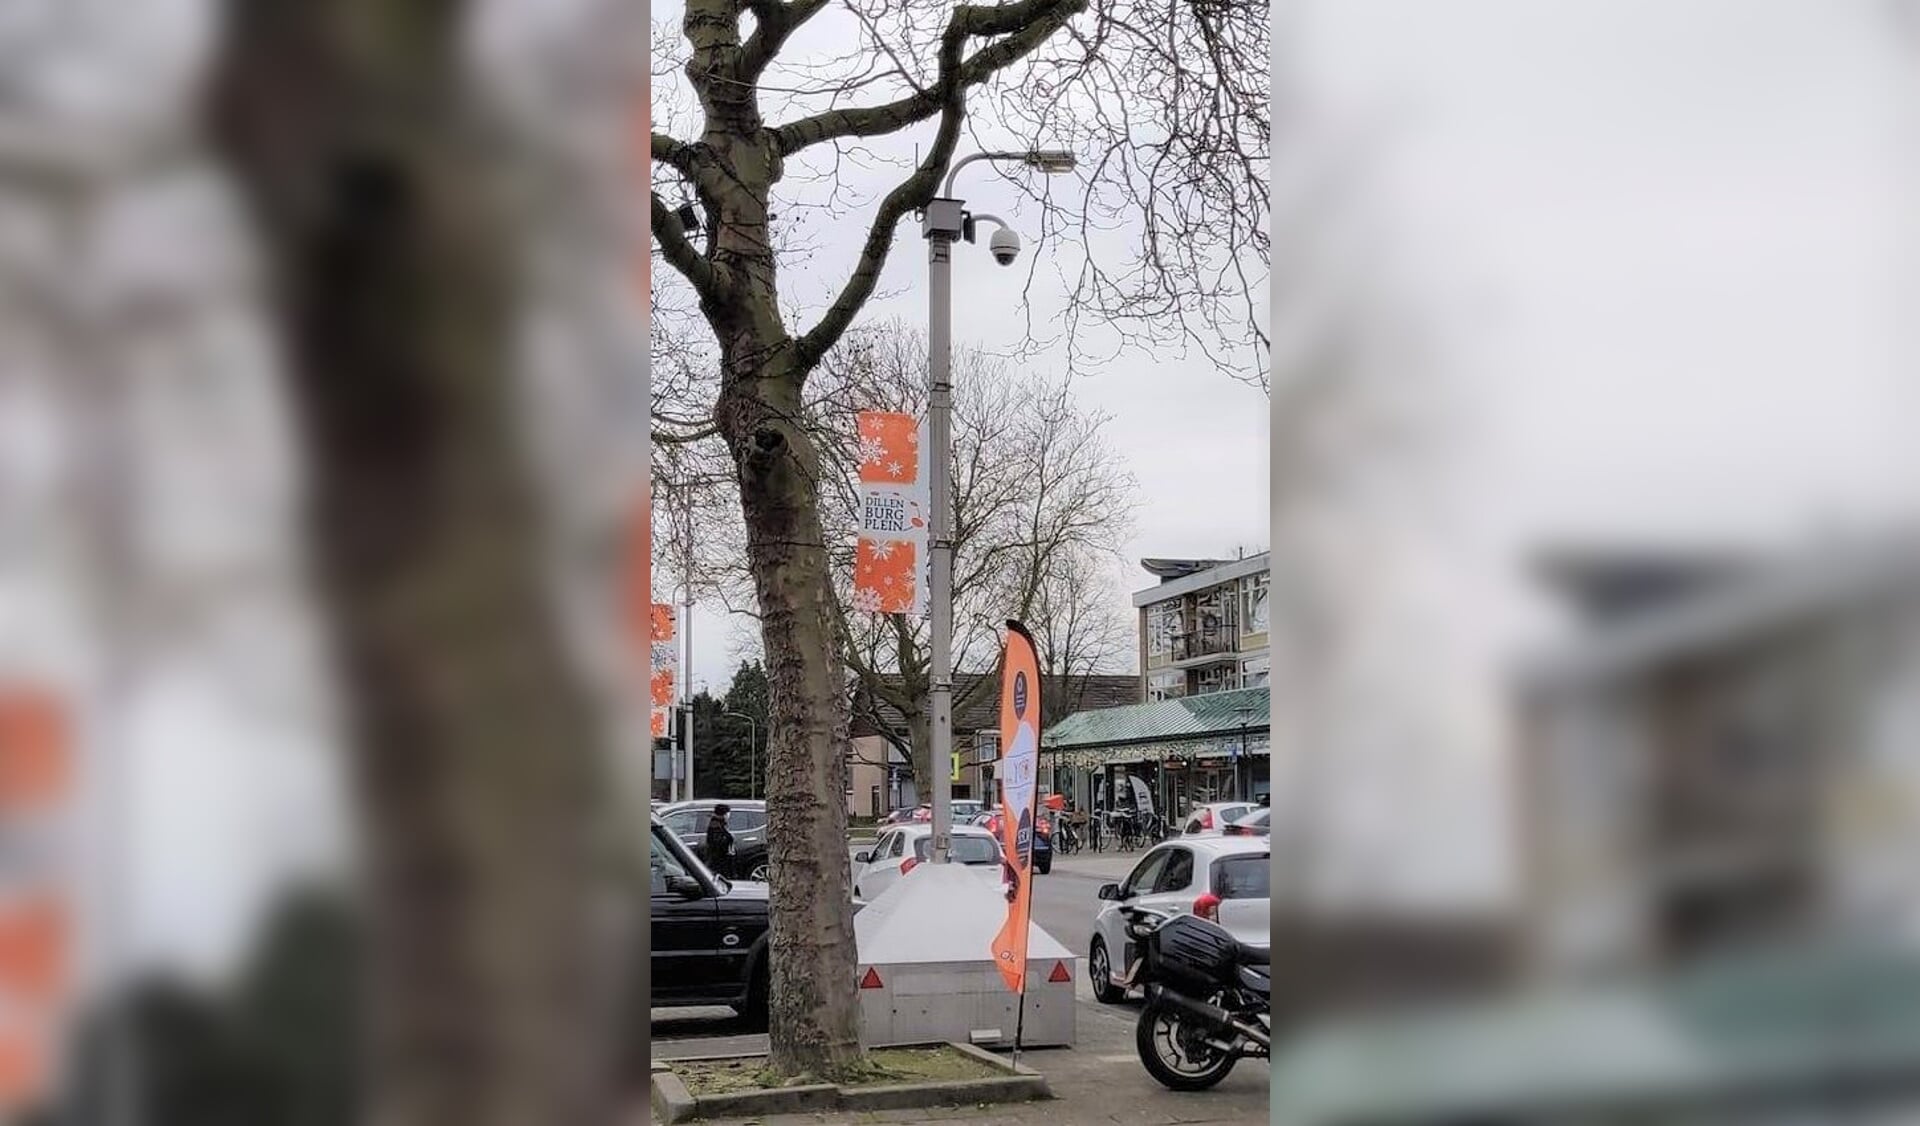 De mobiele camera werd eerder dit jaar op het Dillenburgplein geplaatst.